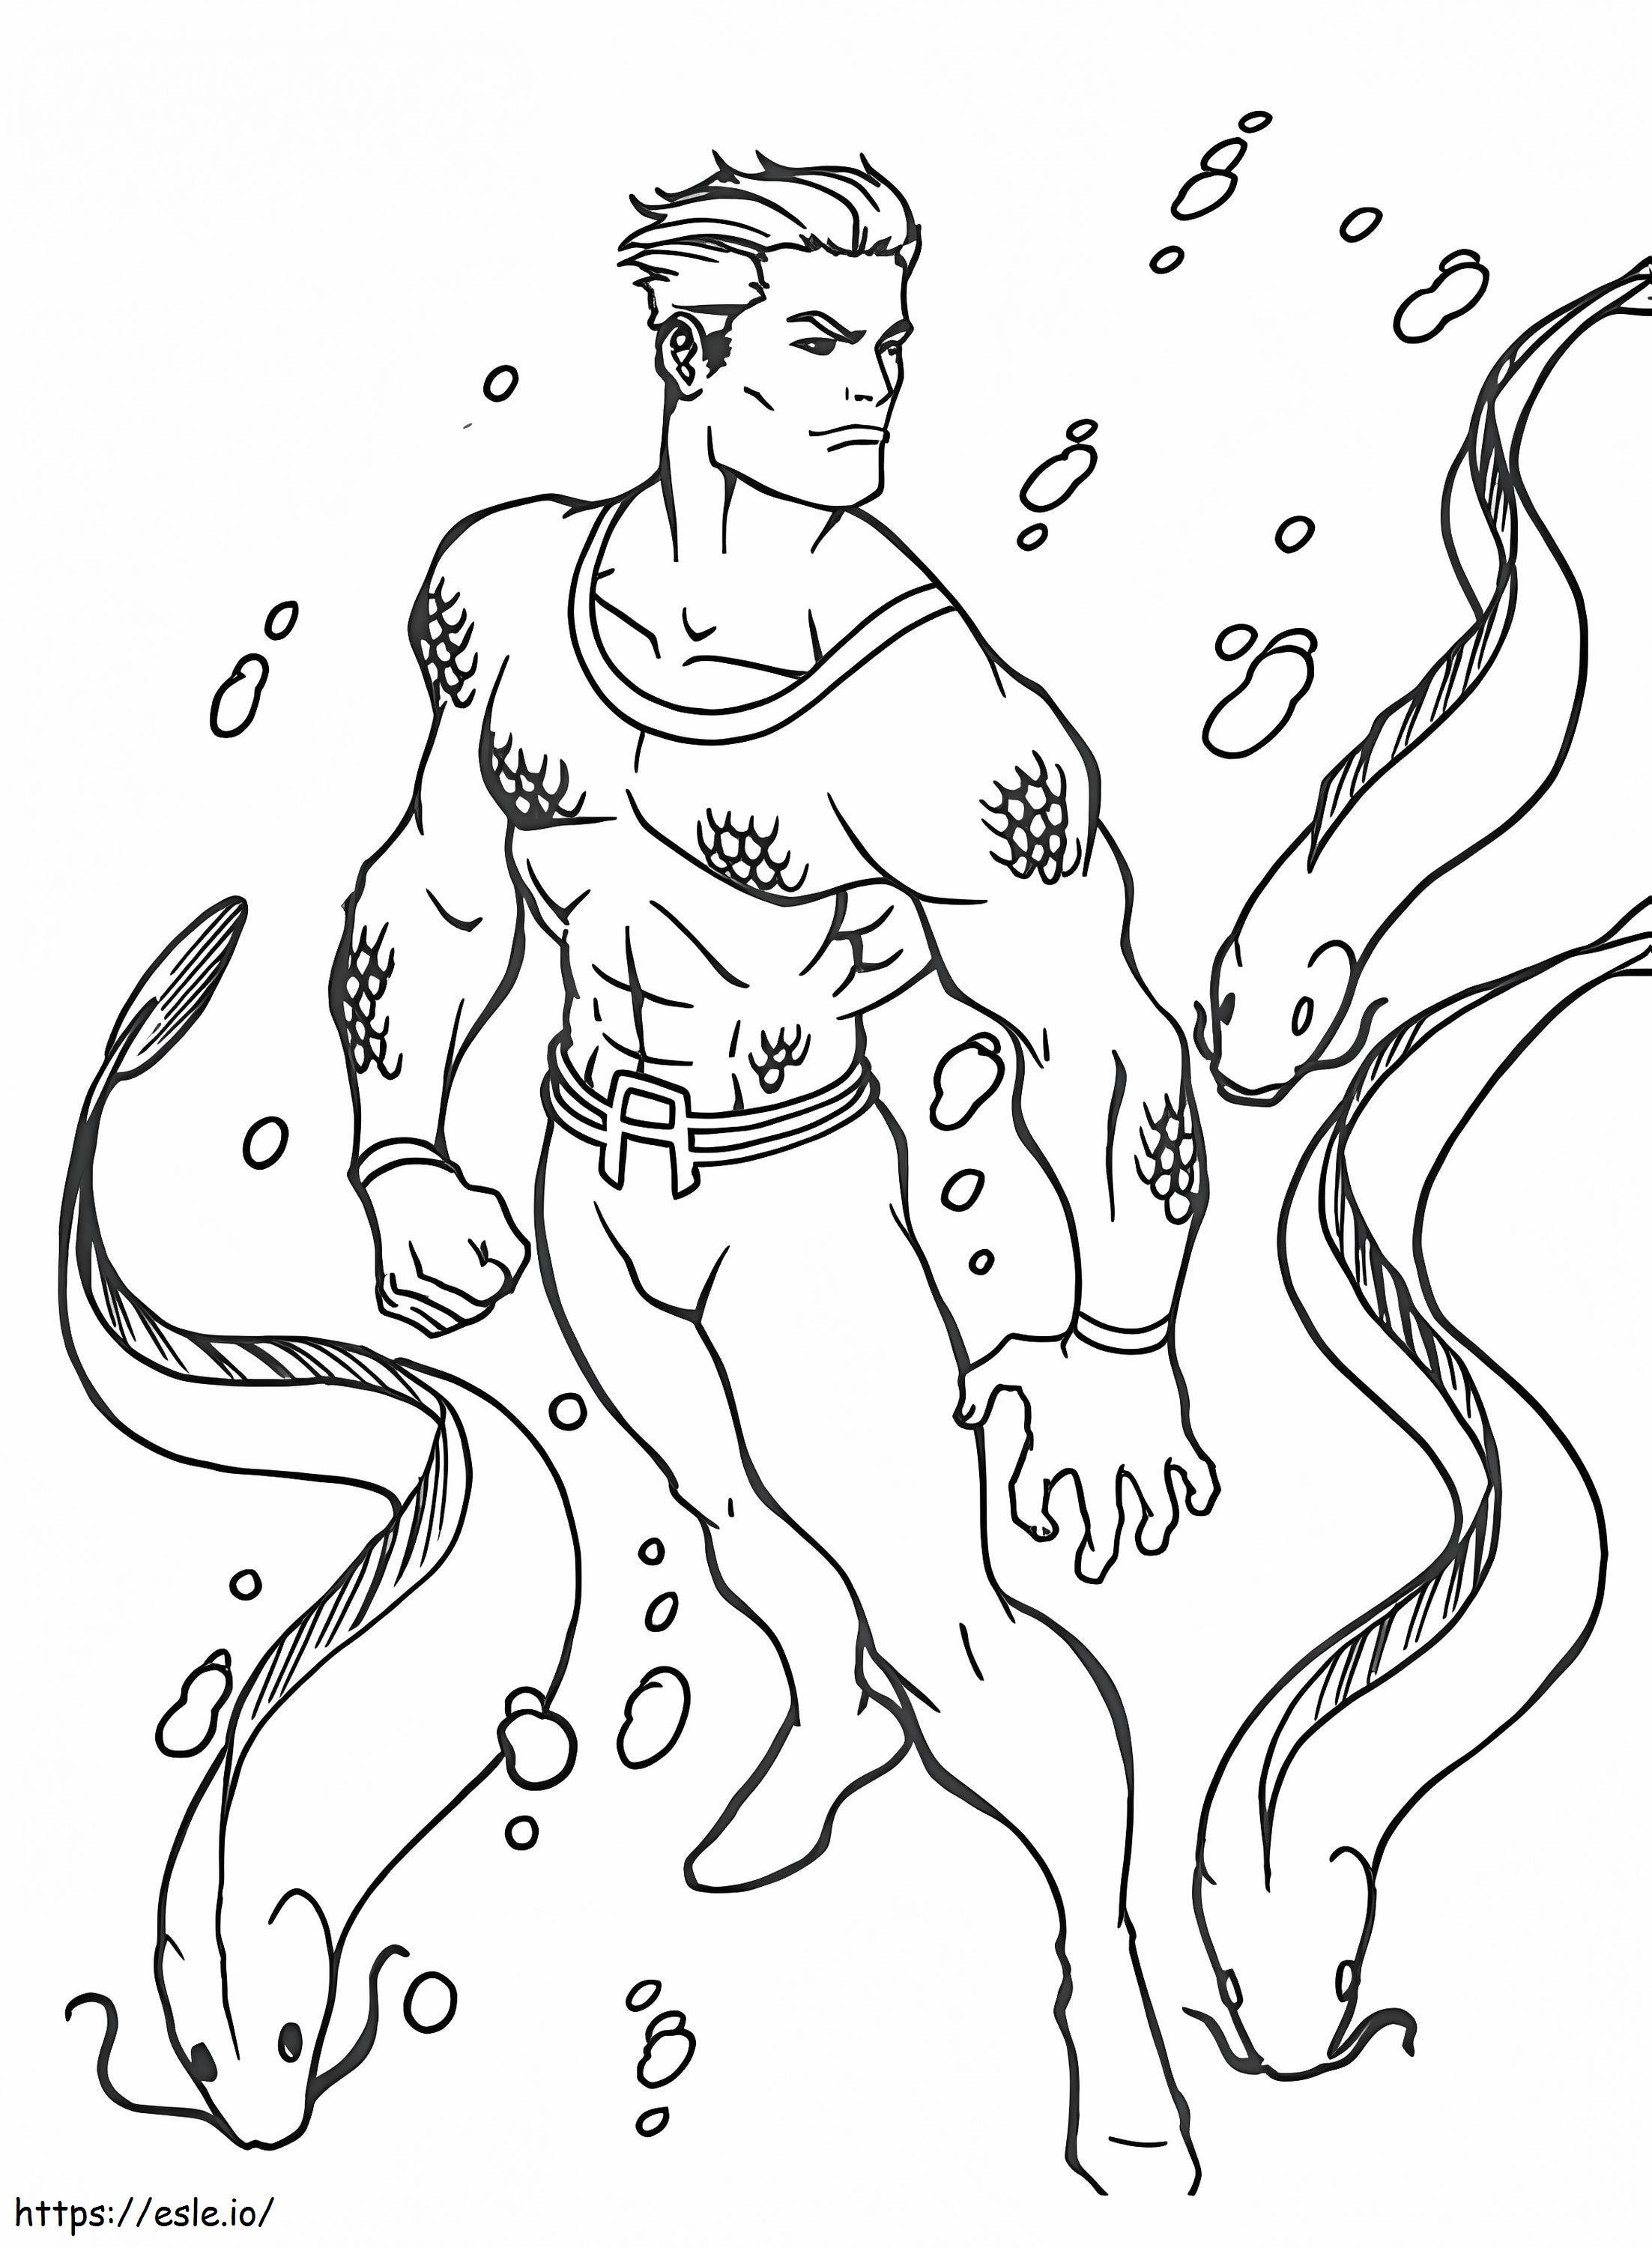 Aquaman fantastico da colorare